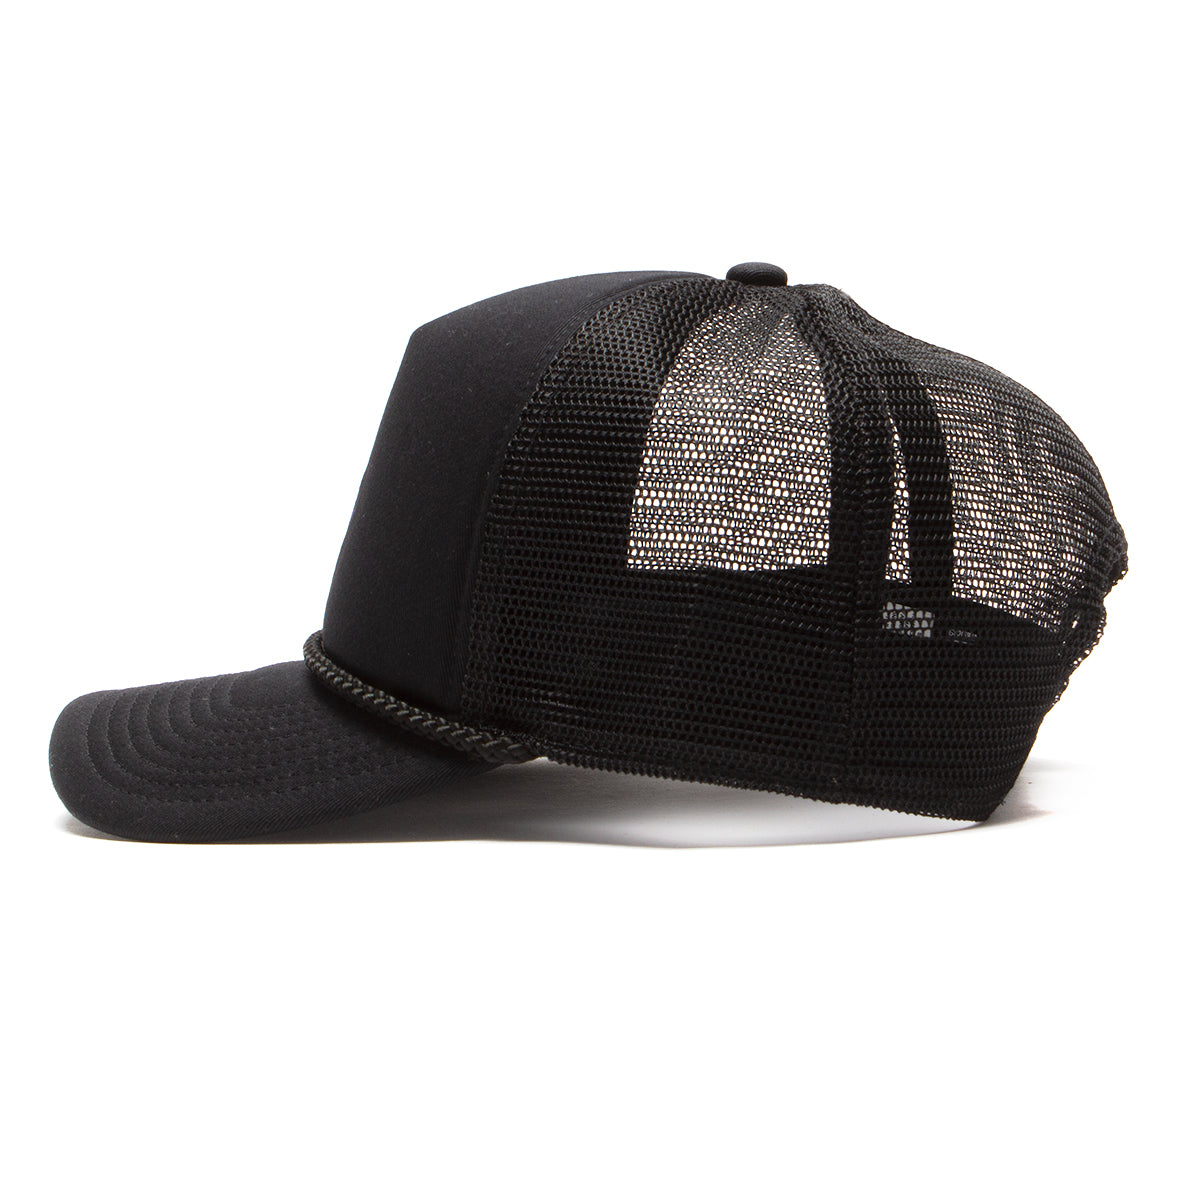 Nike SB Classic99 Black Trucker Hat